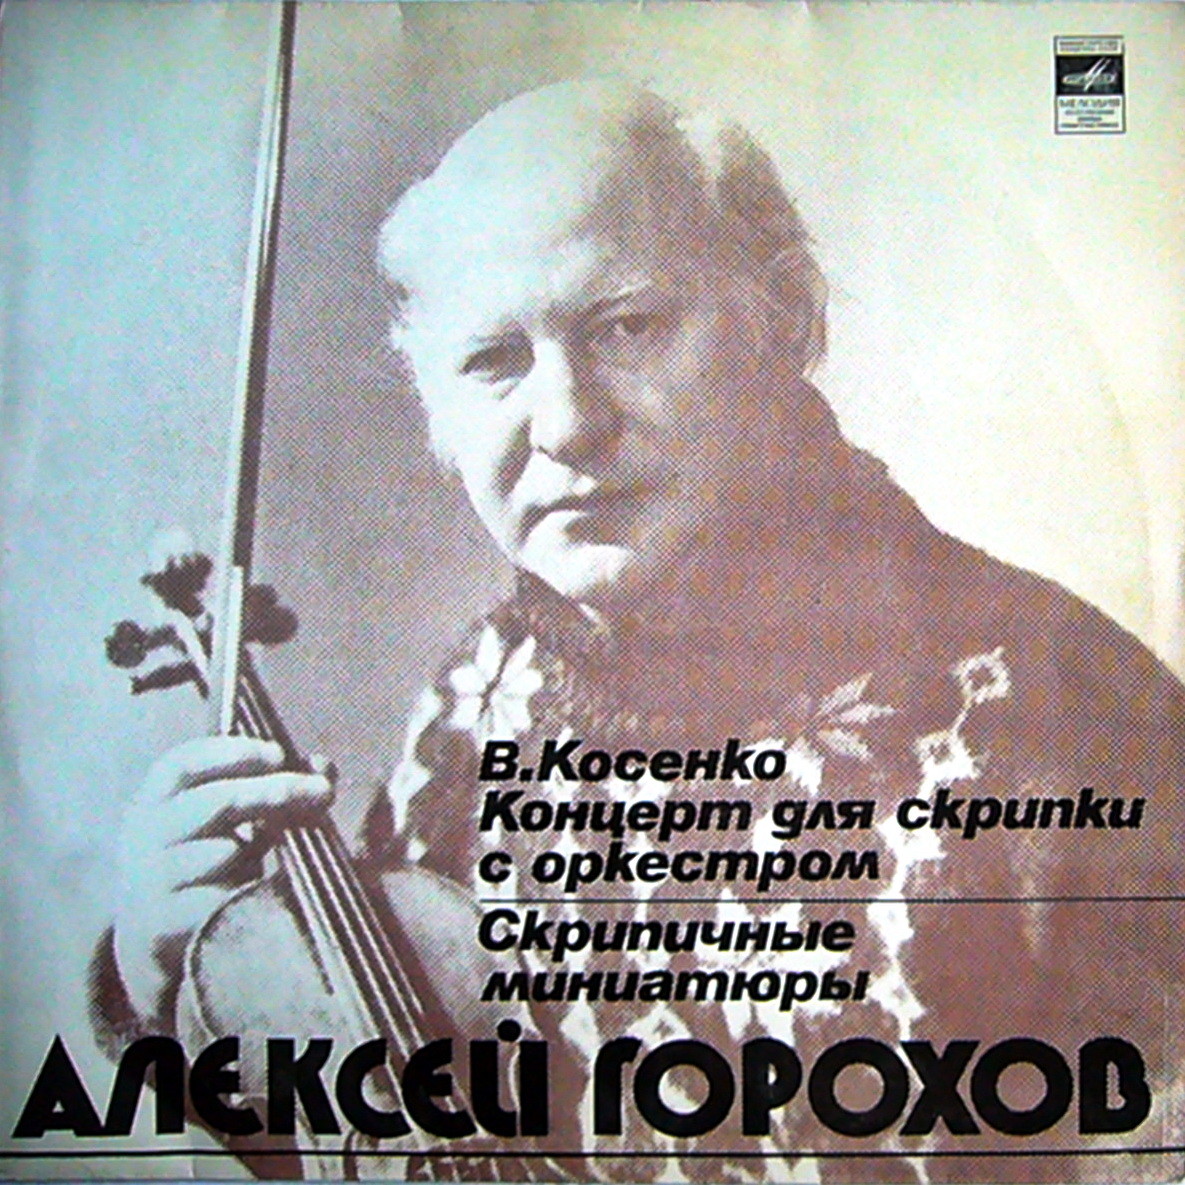 Алексей ГОРОХОВ (скрипка)